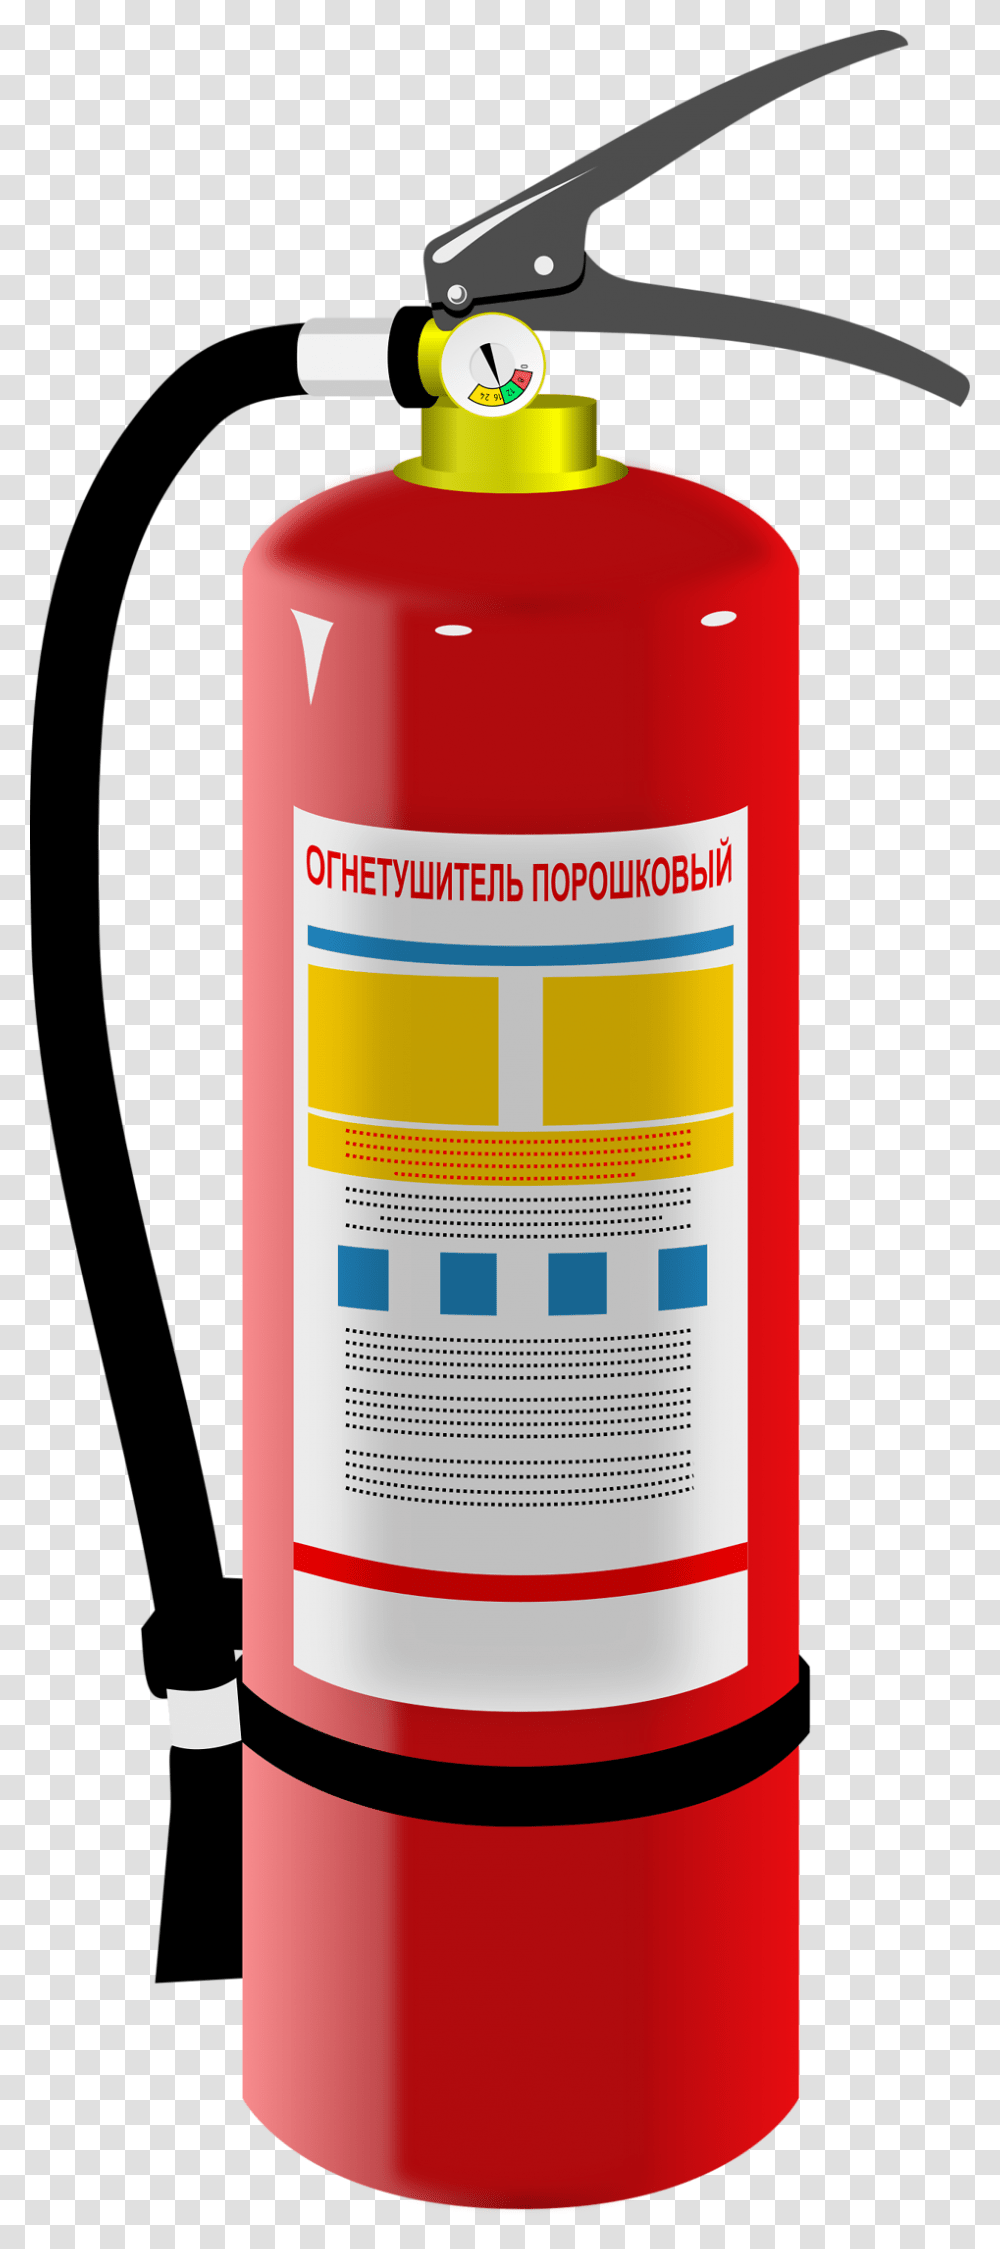 Extinguisher, Tool, Can, Bottle, Aluminium Transparent Png